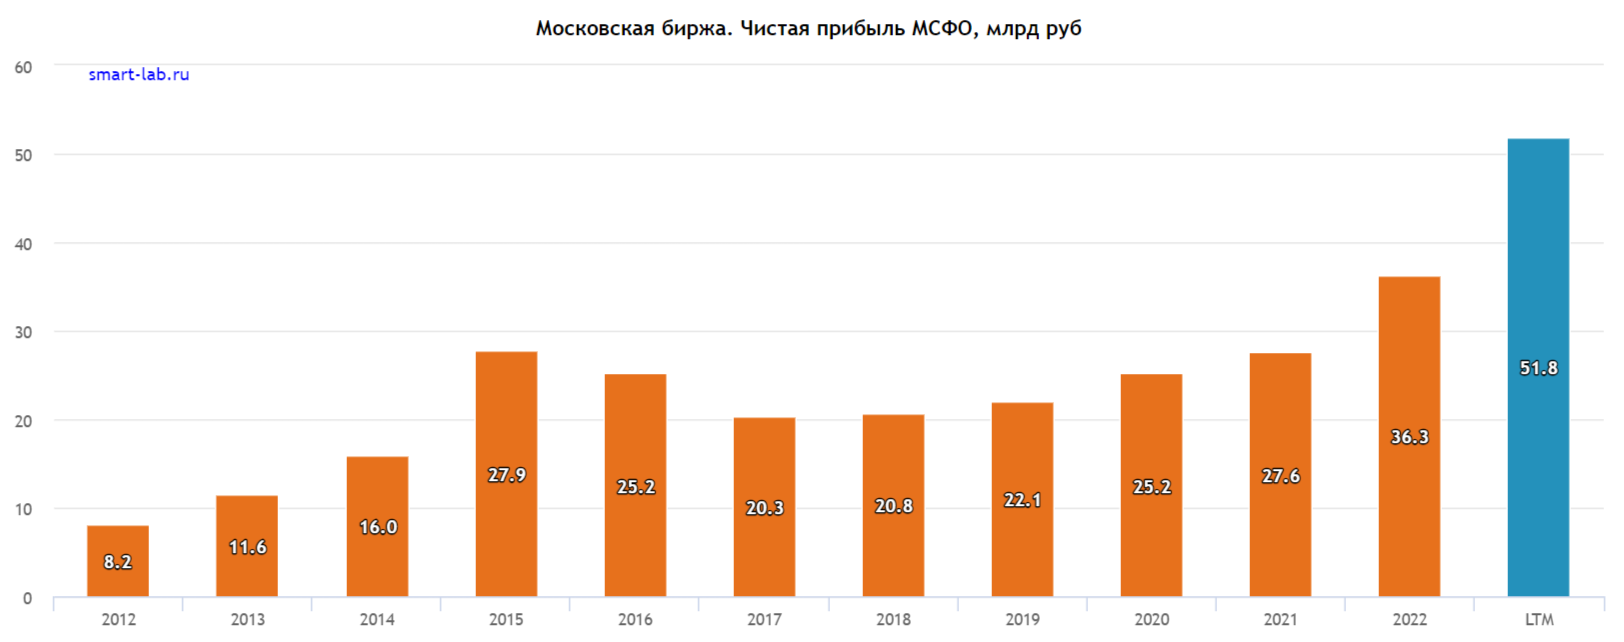 Как менялся размер дивидендов Мосбиржи с 2012 по 2022 год